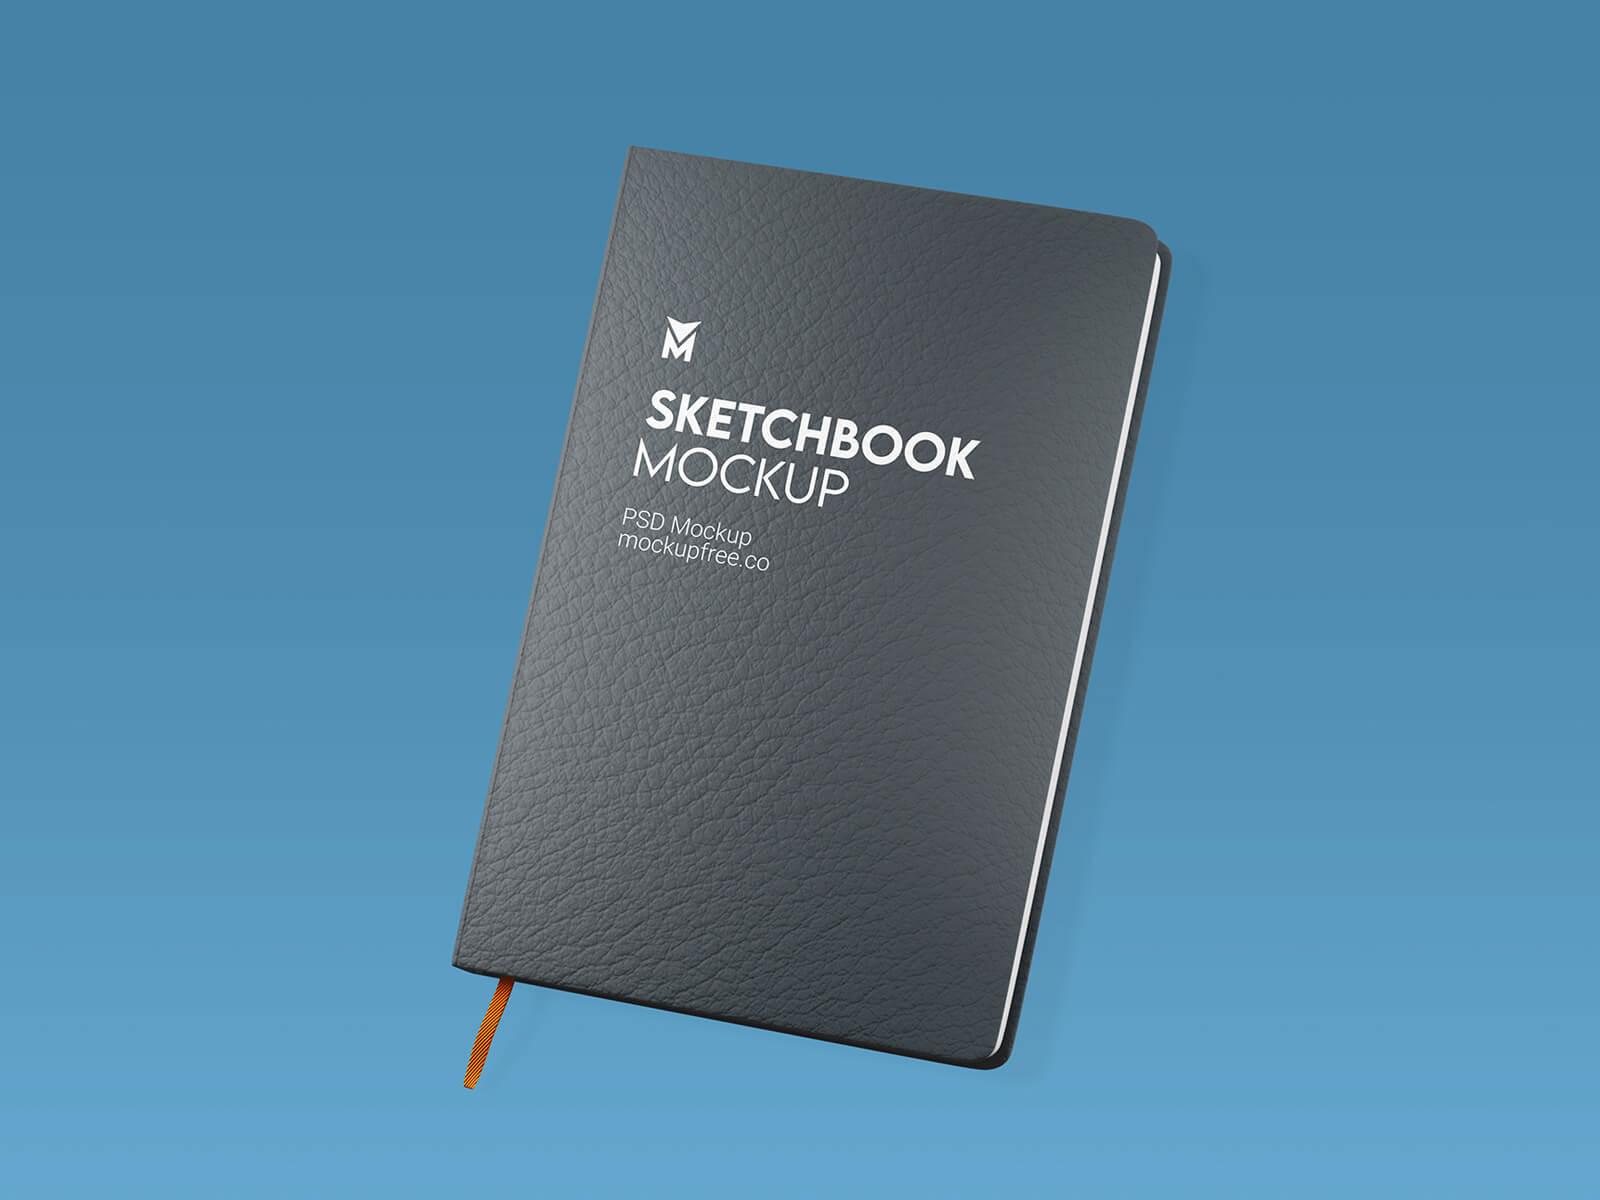 Free Sketchbook Mockup PSD Set